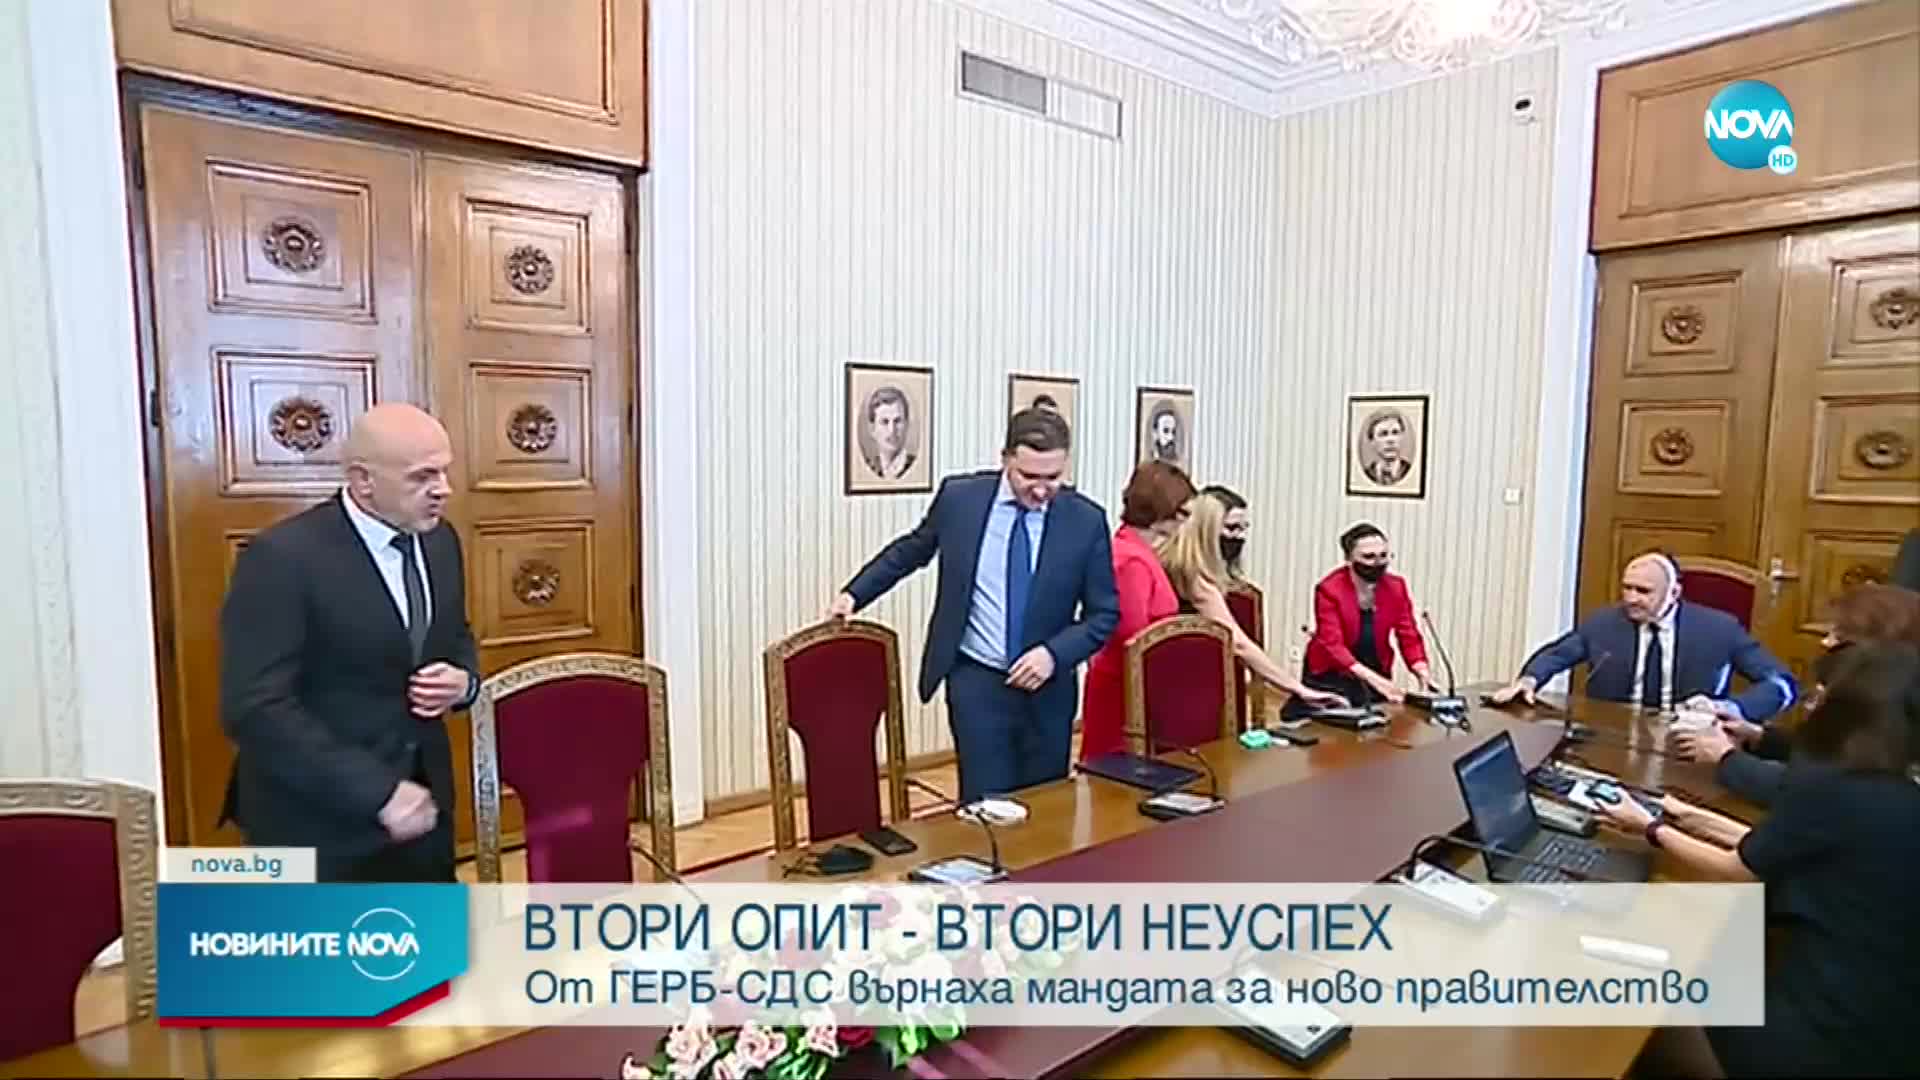 Президентът връчи втория мандат на ГЕРБ-СДС, Даниел Митов го върна